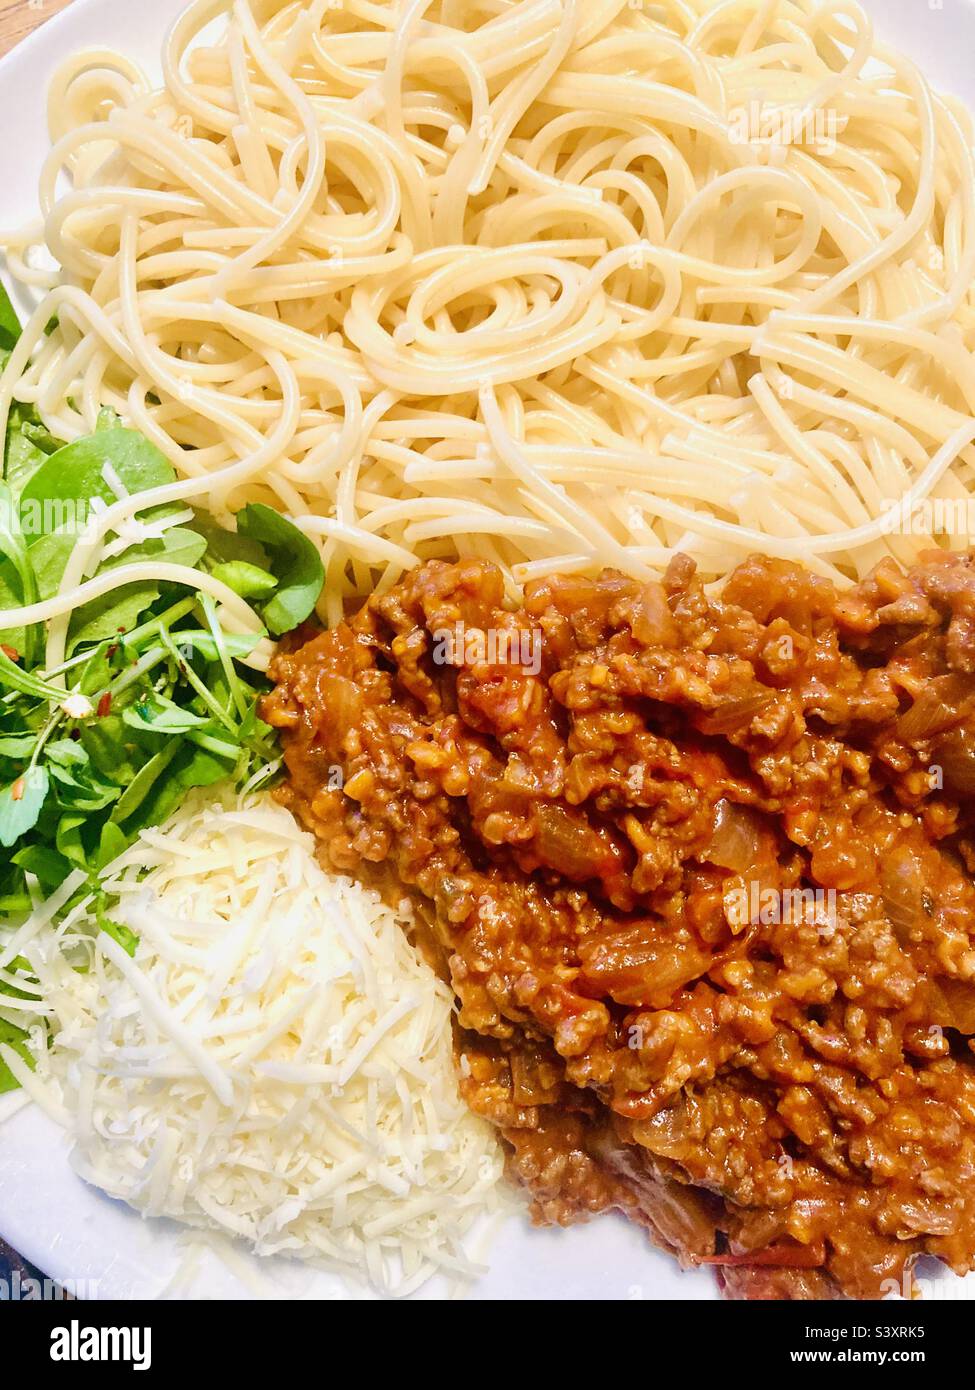 Nahaufnahme von Spaghetti, Bolognaise, geriebenem Käse und gemischten Blättern Stockfoto